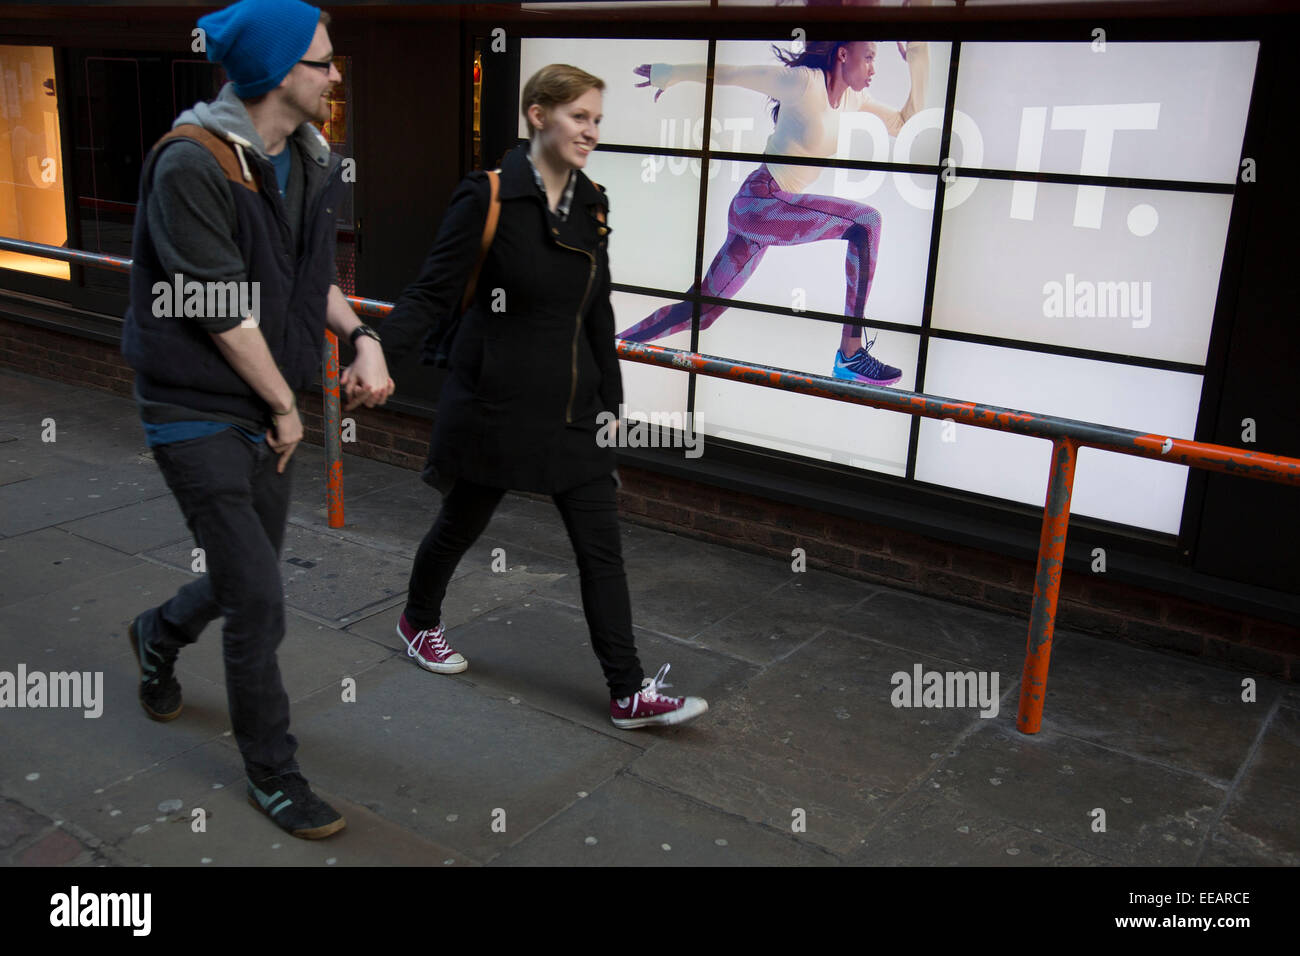 Pubblicità Nike runner corre lungo una barriera vicino gli ignari cittadini. Il video annuncio pubblicitario con lo slogan "Just Do It con una donna che attraversano lo schermo rende per un'illusione ottica di sorta ed una strana scena urbana. Londra, Regno Unito. Foto Stock